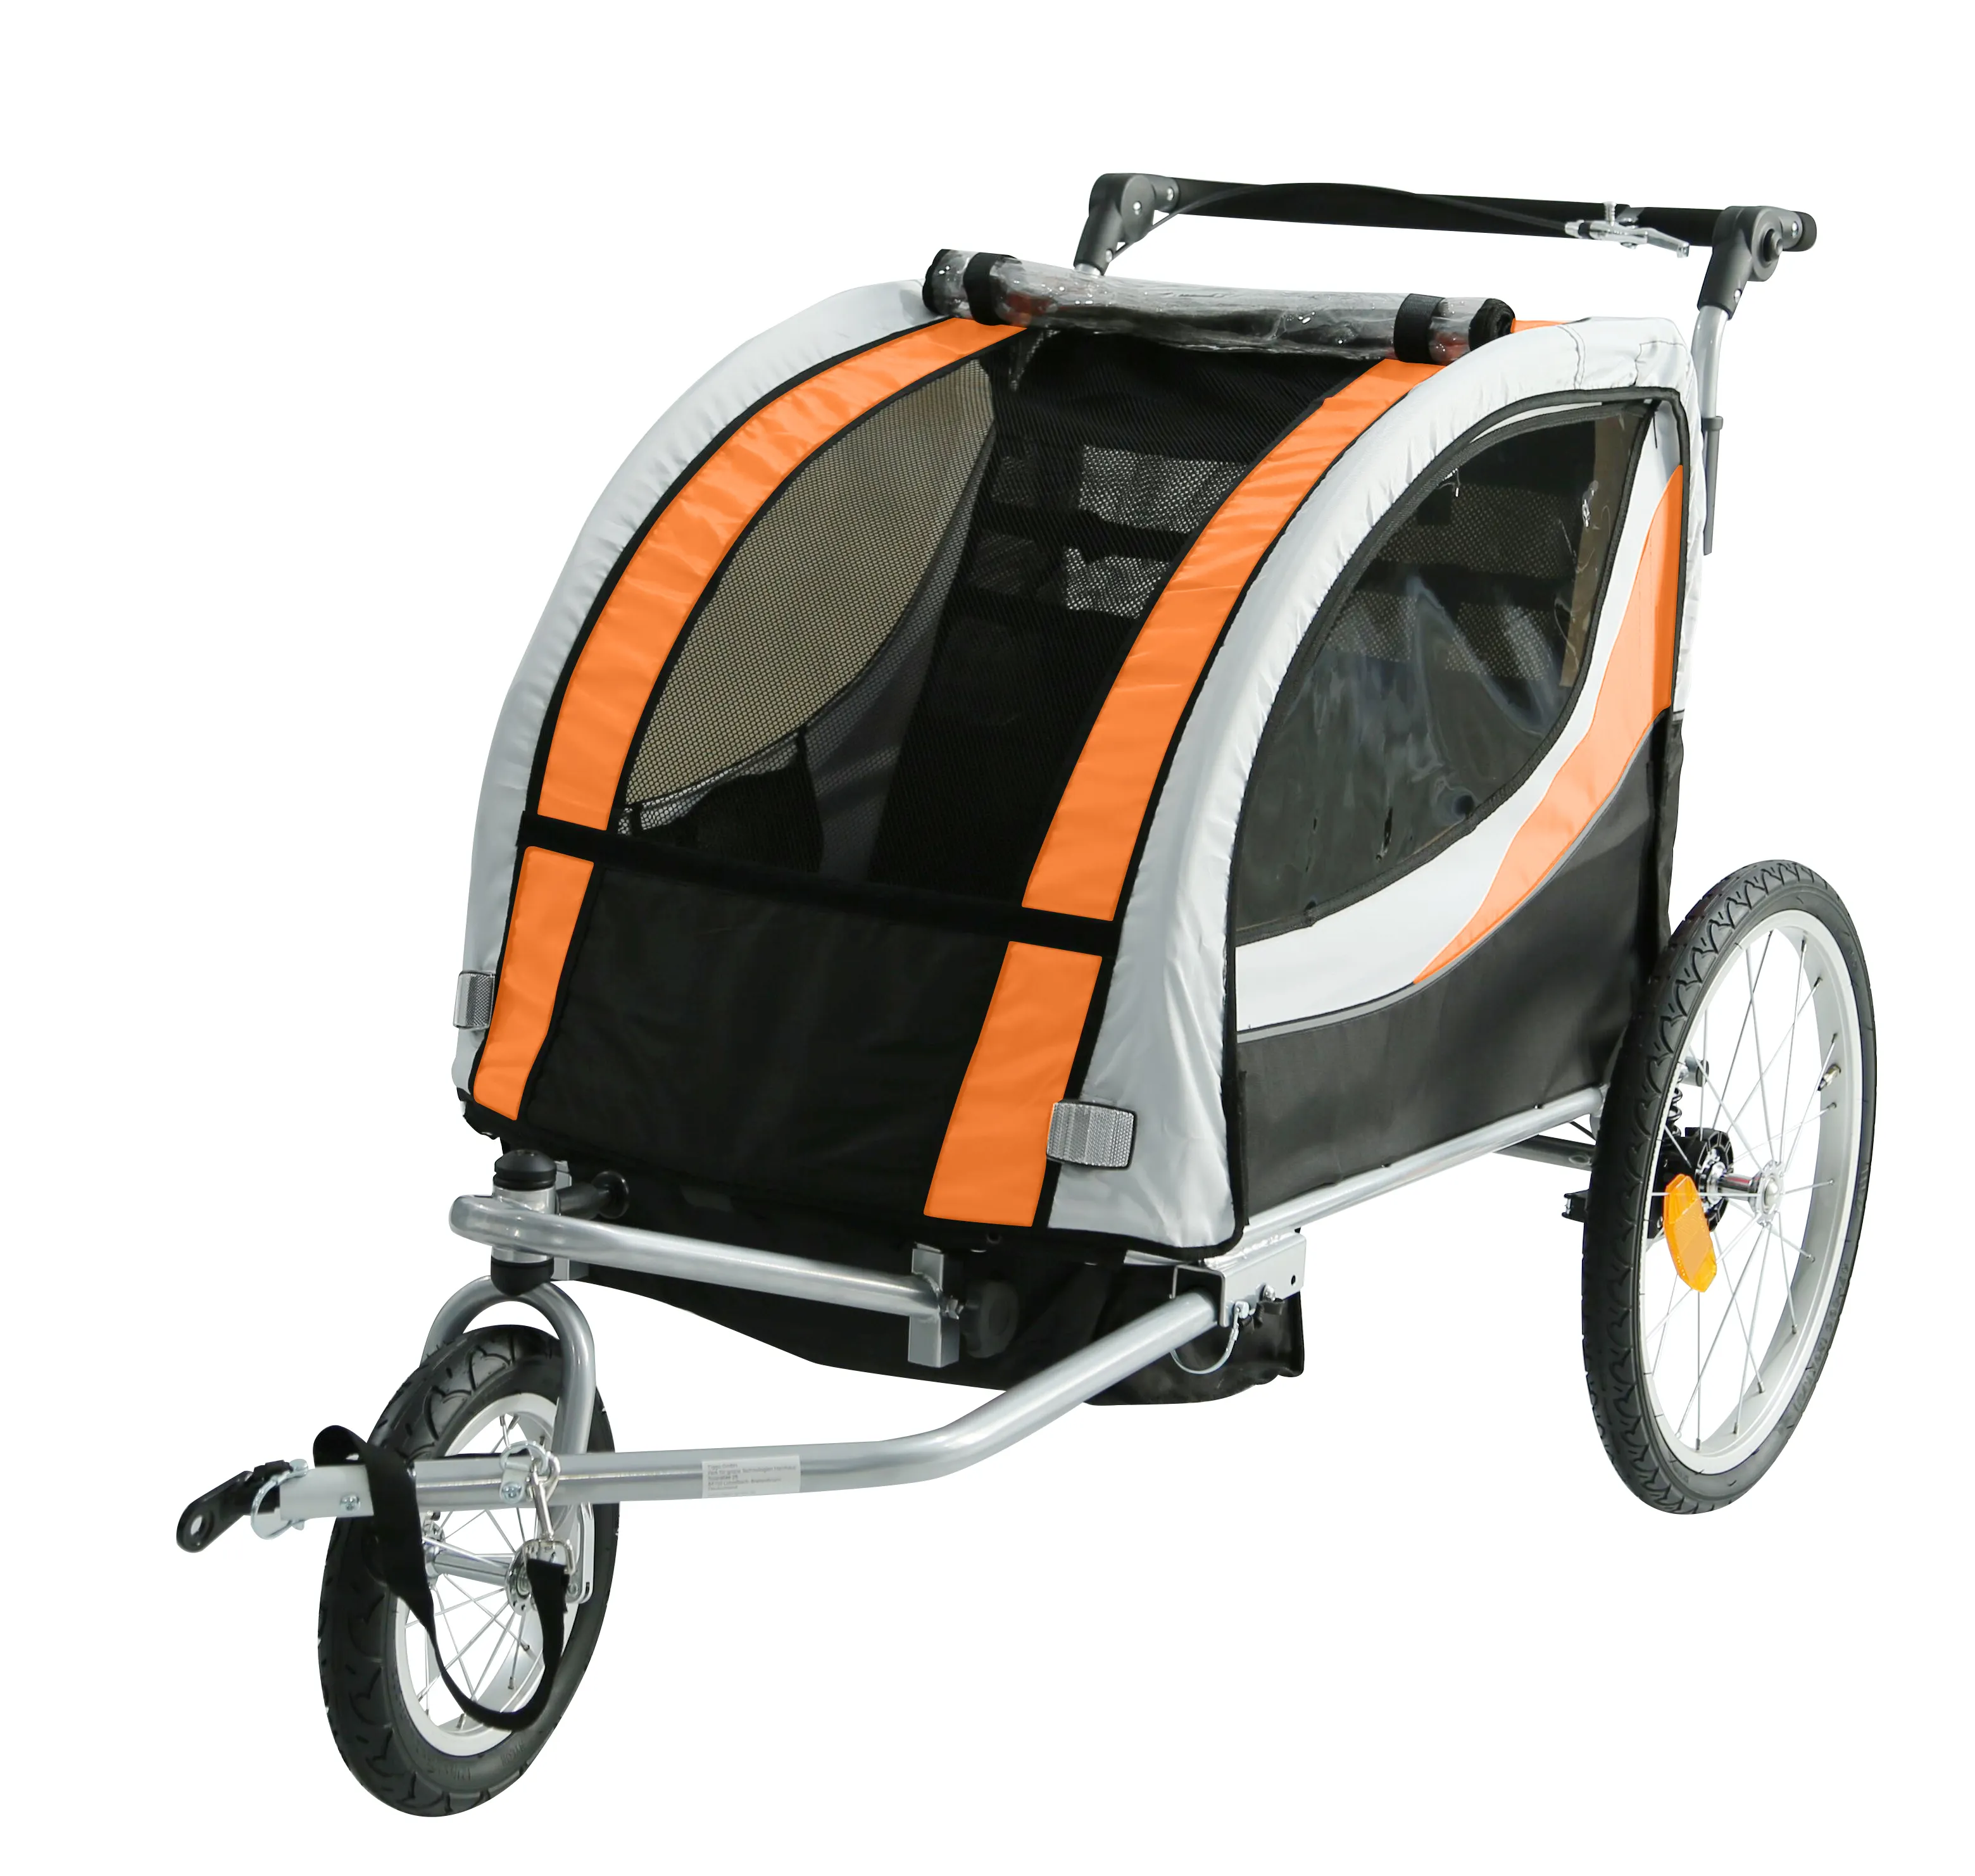 2021 תינוק אופניים קרוואן פלדת מסגרת עם גבוהה באיכות אופניים עגלת, סיני מפעל למכור תינוק jogger אופני קרוואן